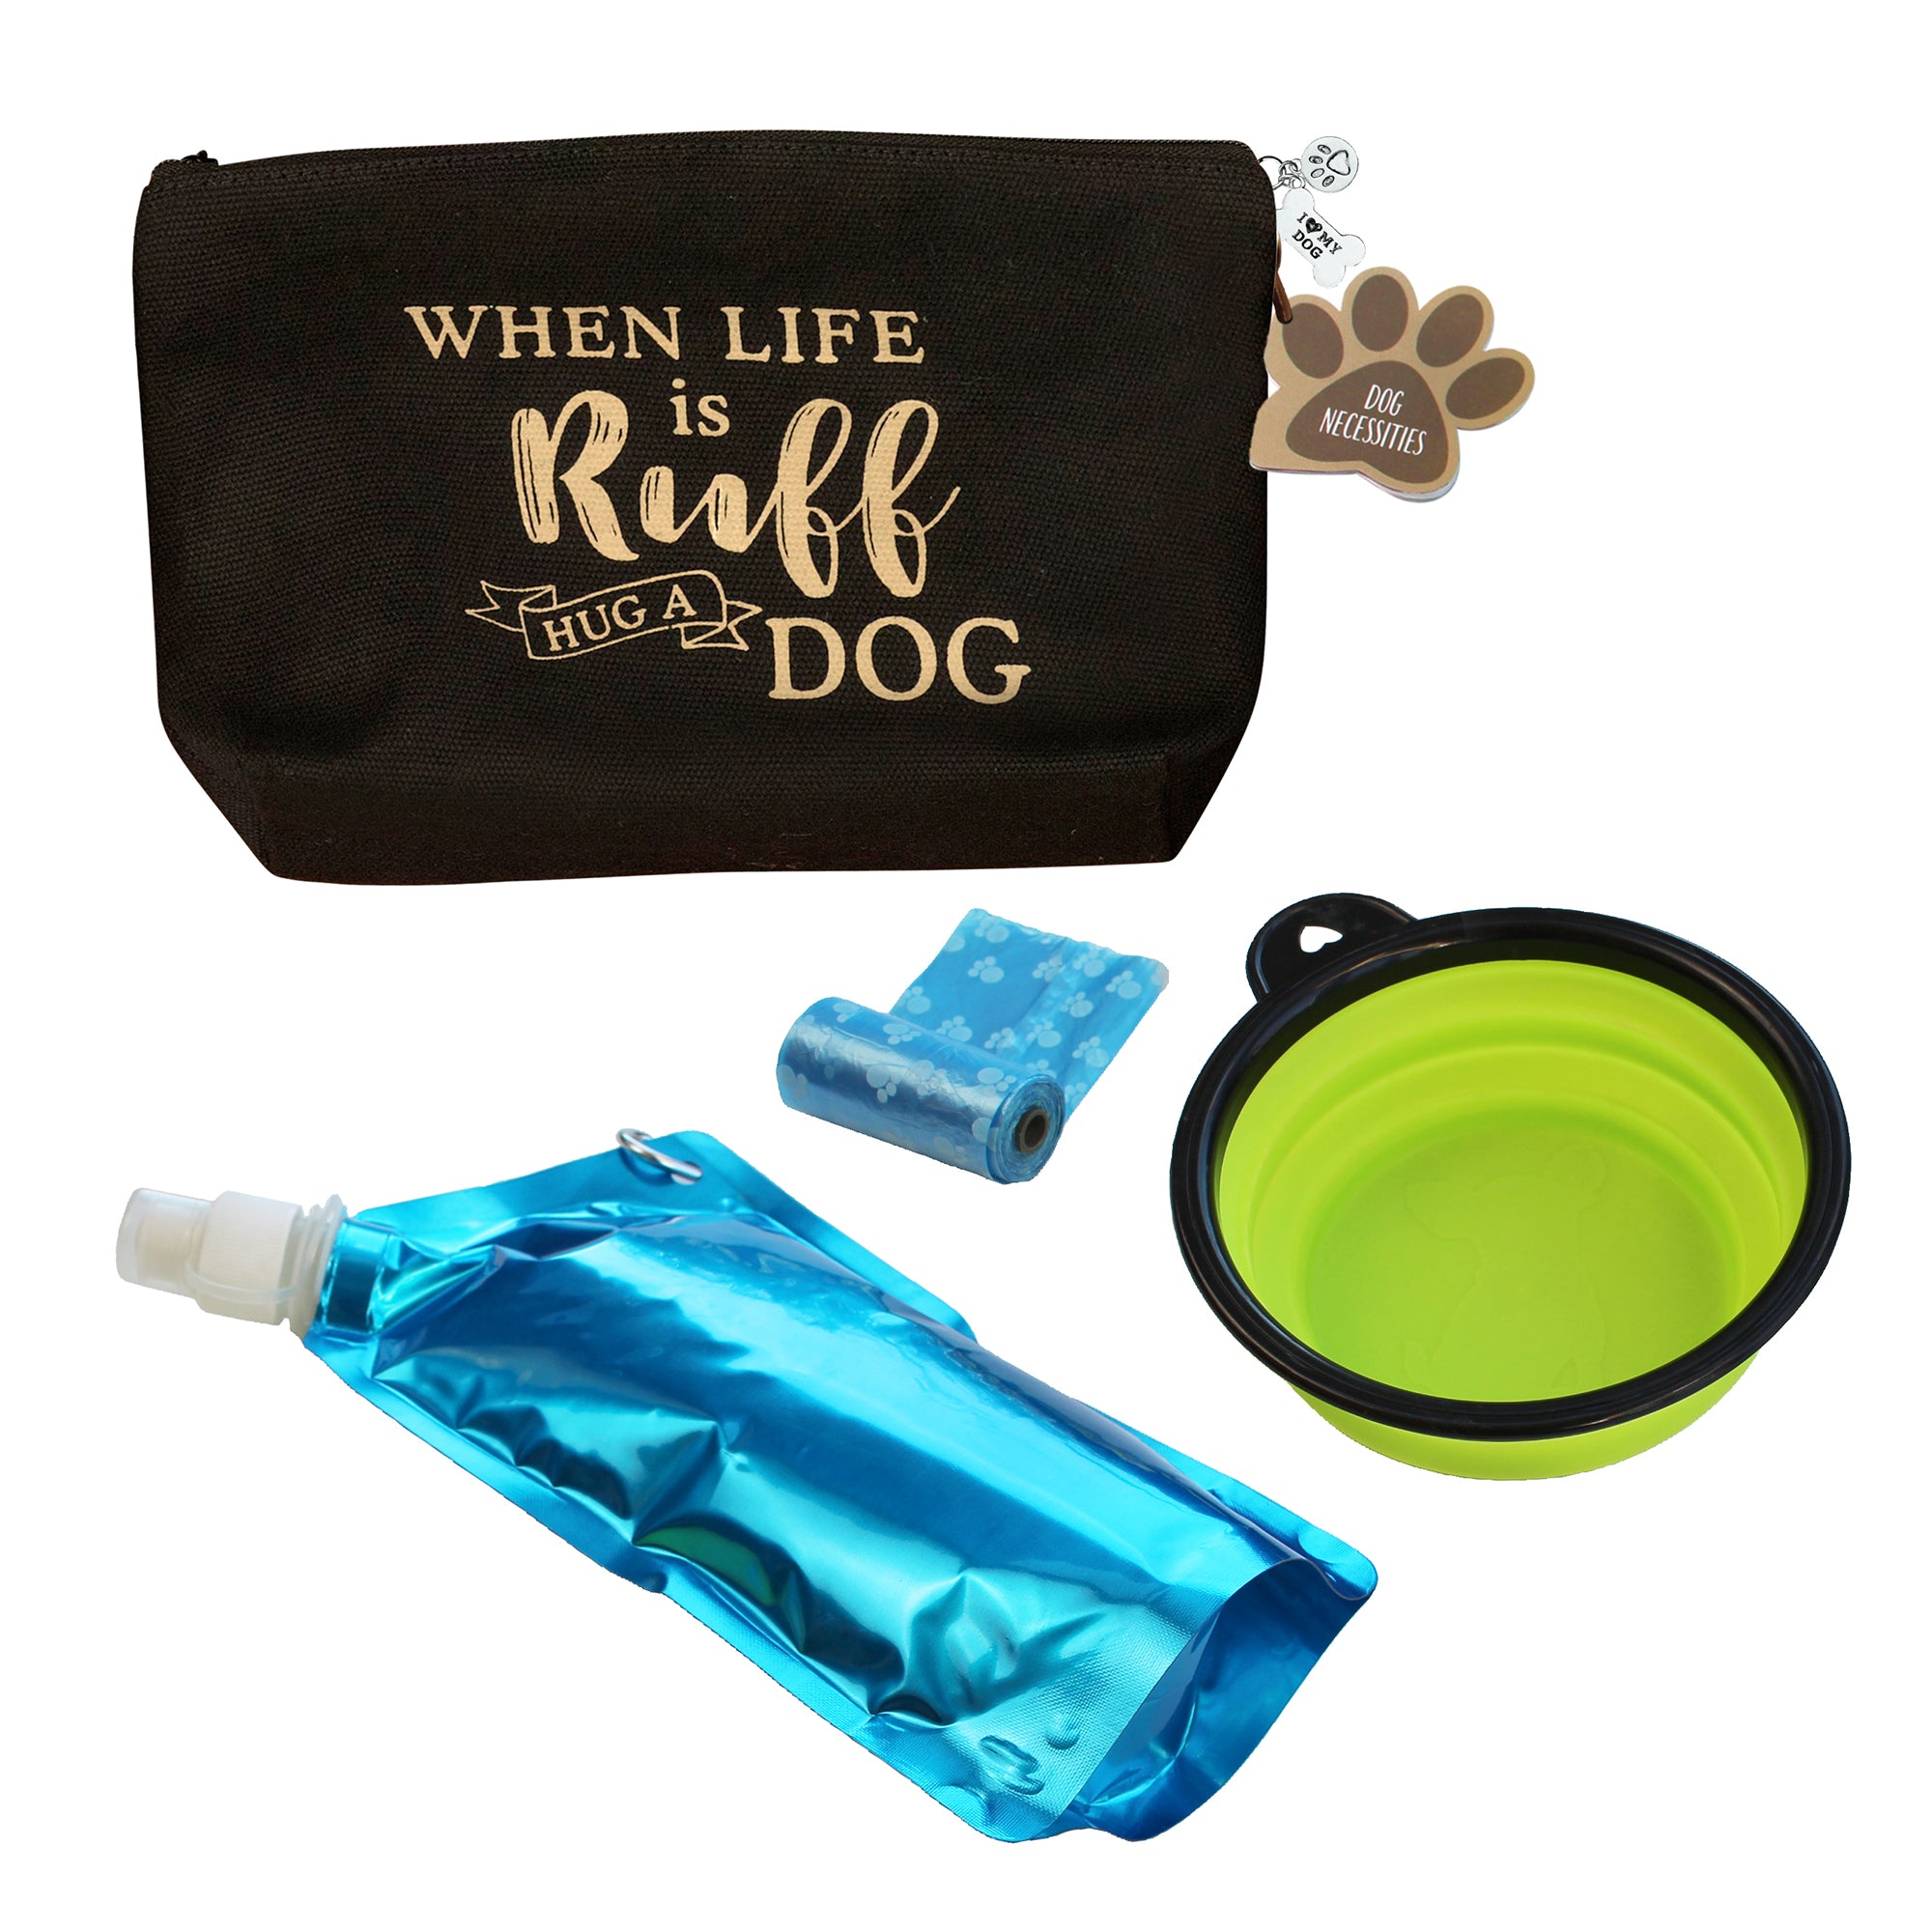 Dog Travel Kit - When Life is Ruff, Hug a Dog